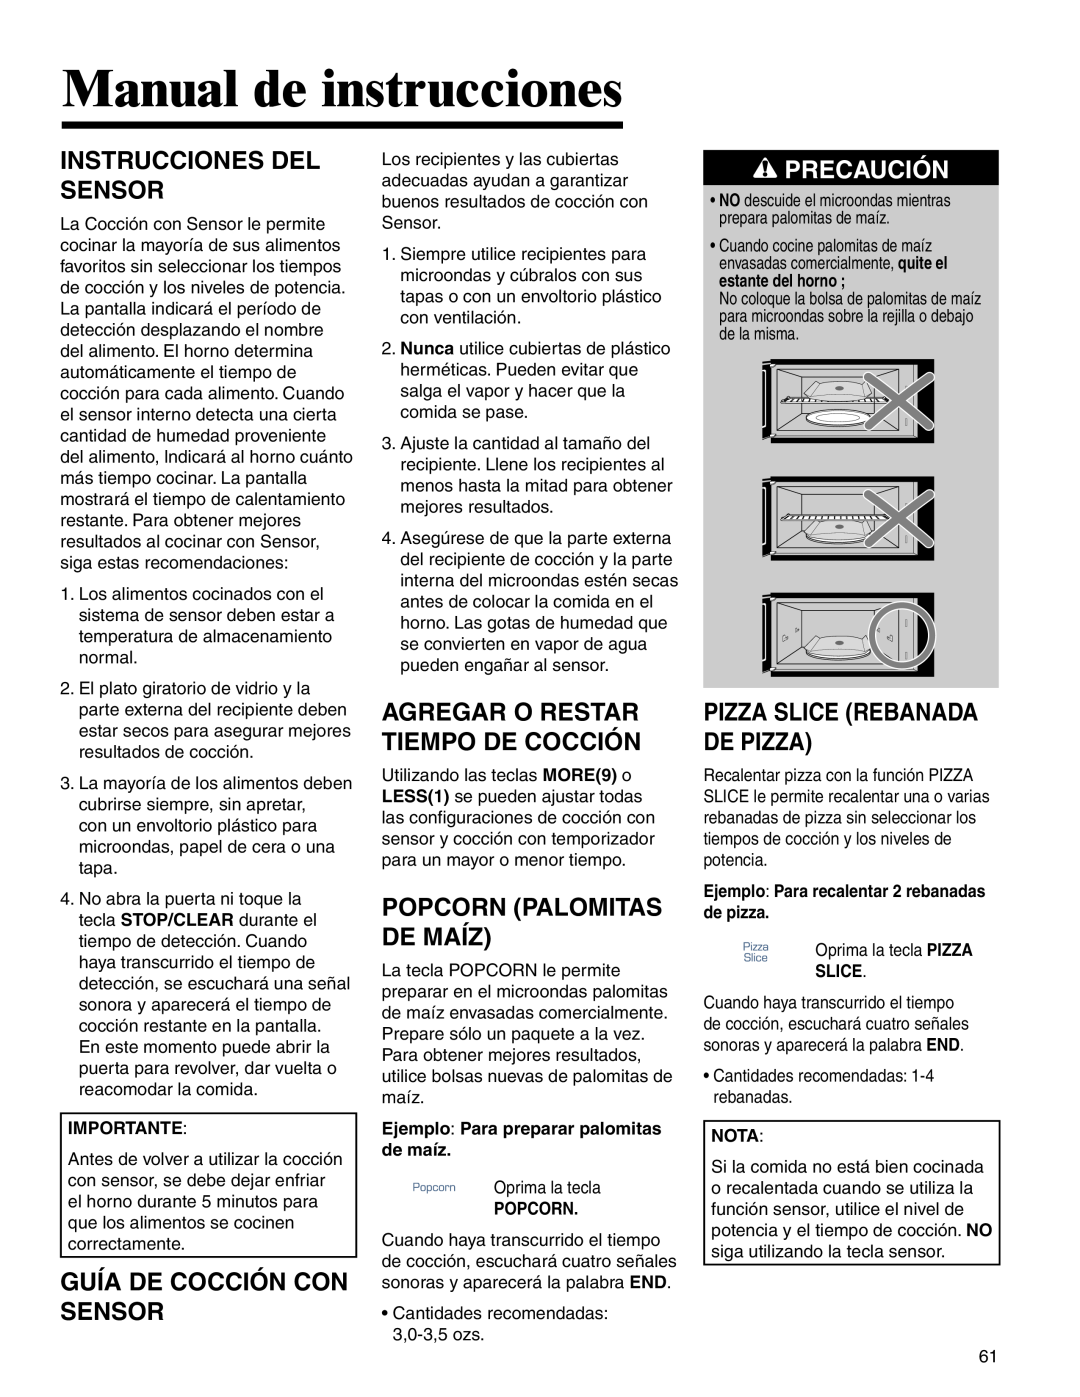 Amana AMV5164BA/BC Instrucciones Del Sensor, Guía De Cocción Con Sensor, Popcorn Palomitas De Maíz, Precaución 